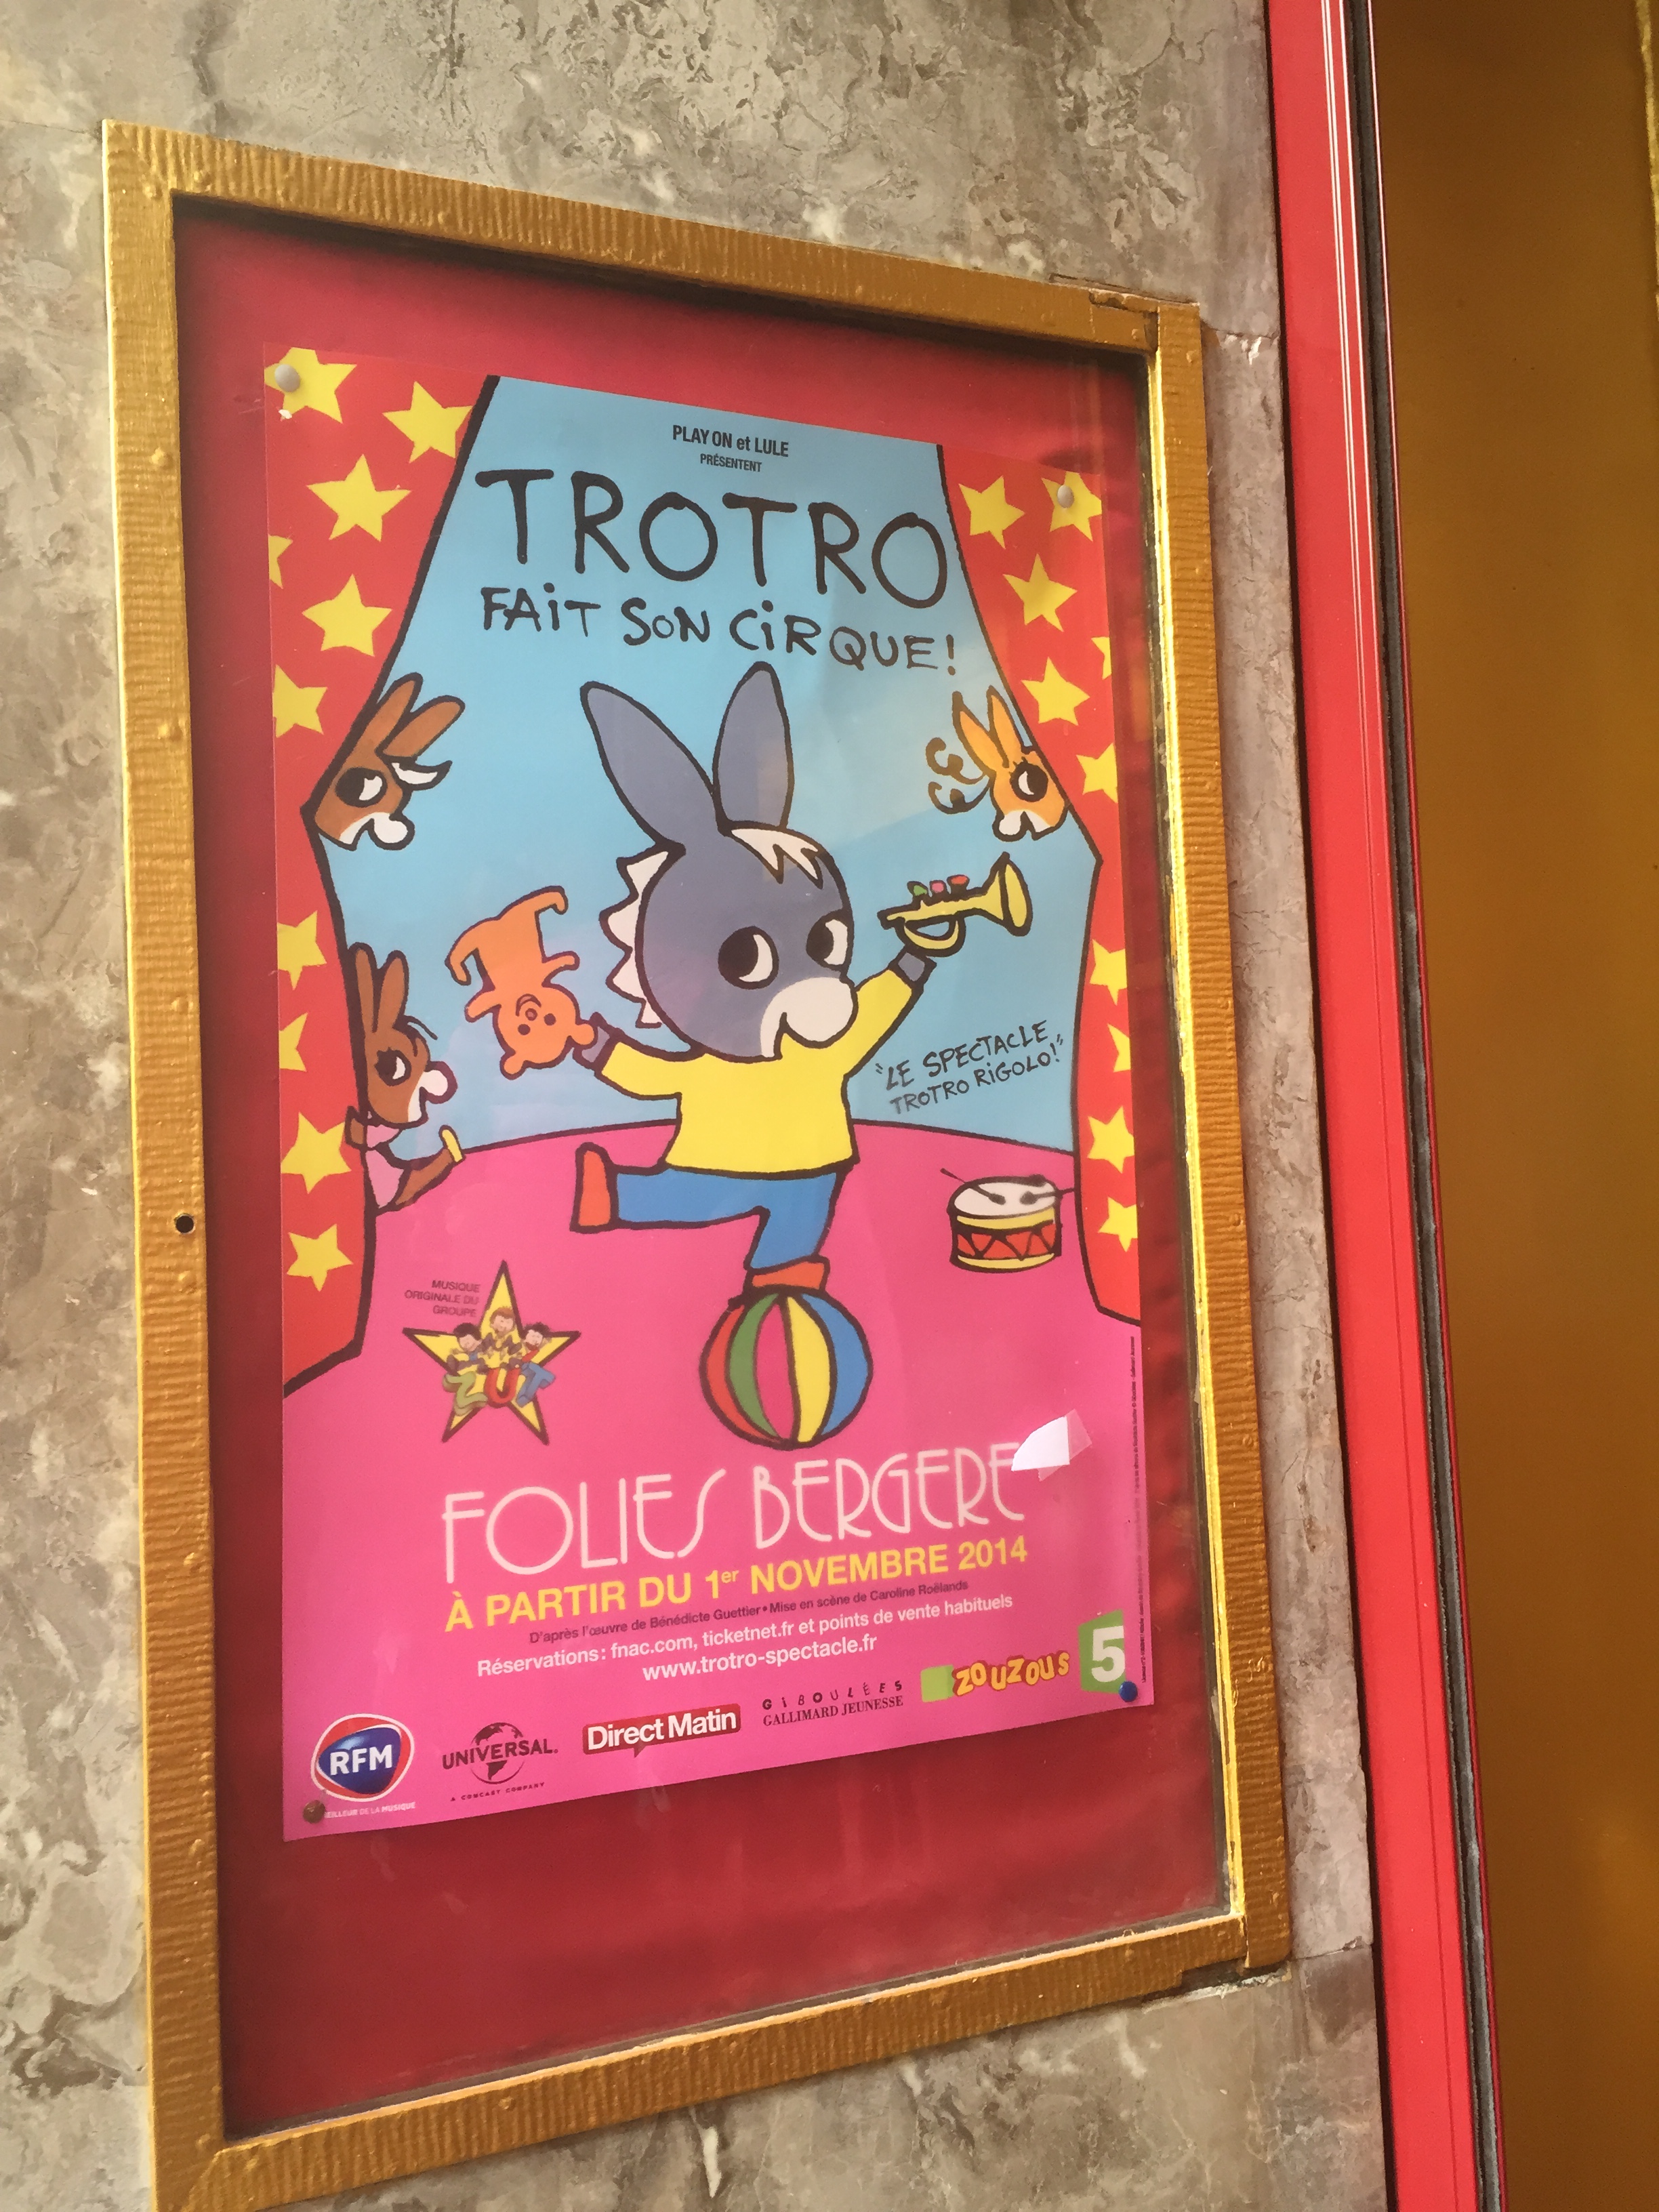 Les jouets et objets vendus au spectacle de Trotro fait son cirque -  PMGirl